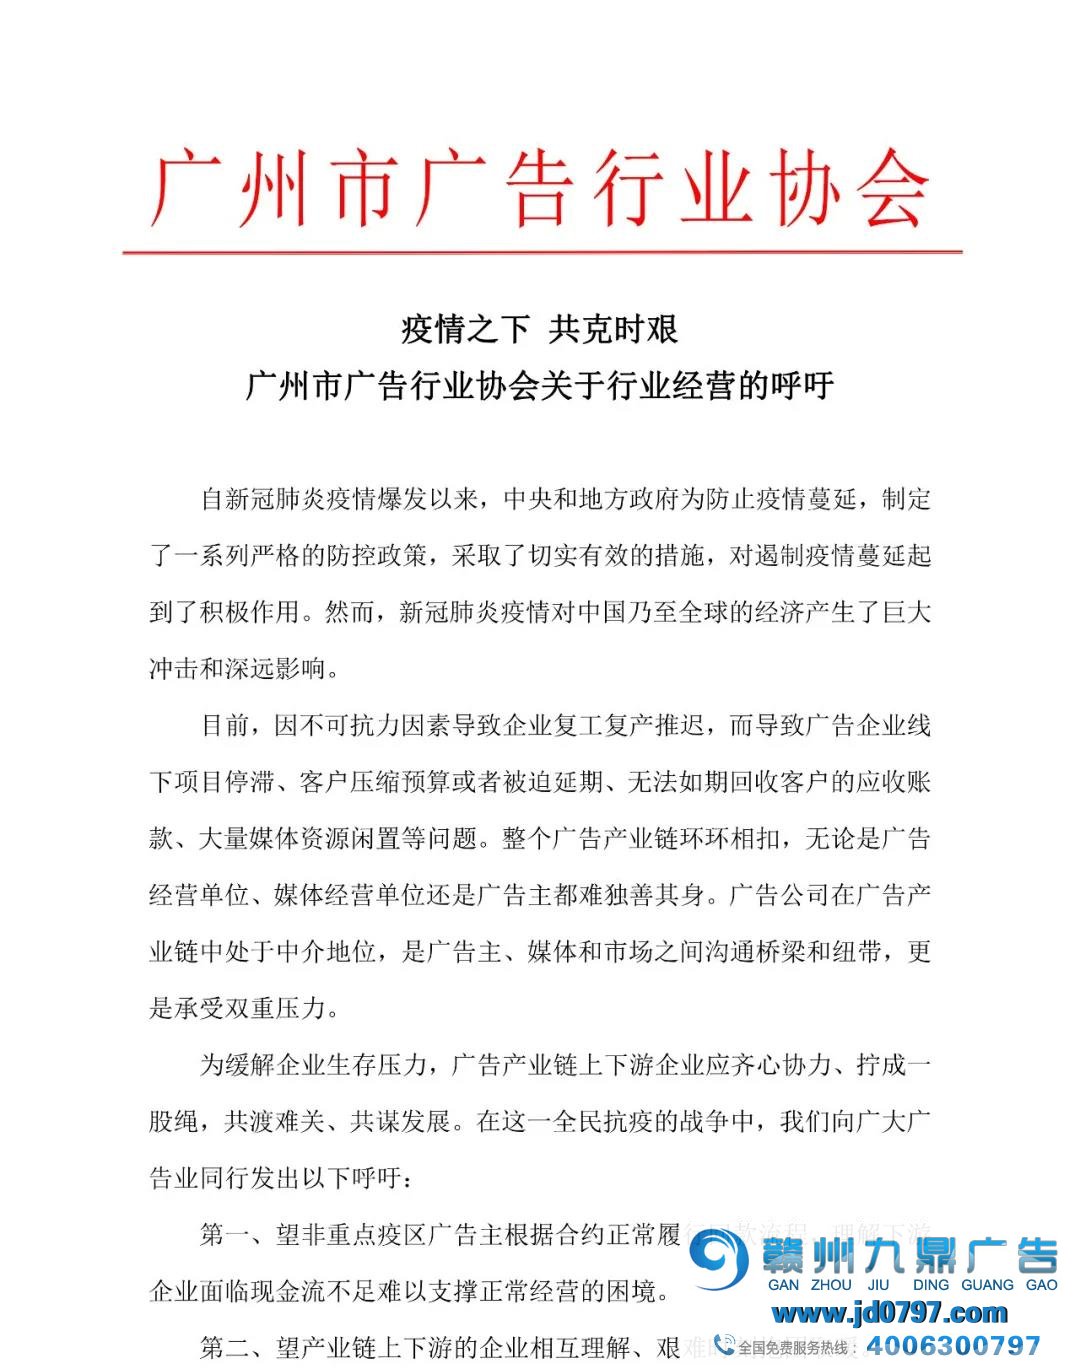 疫情之下 共克时艰-广州市广告行业协会关于行业筹谋的下令